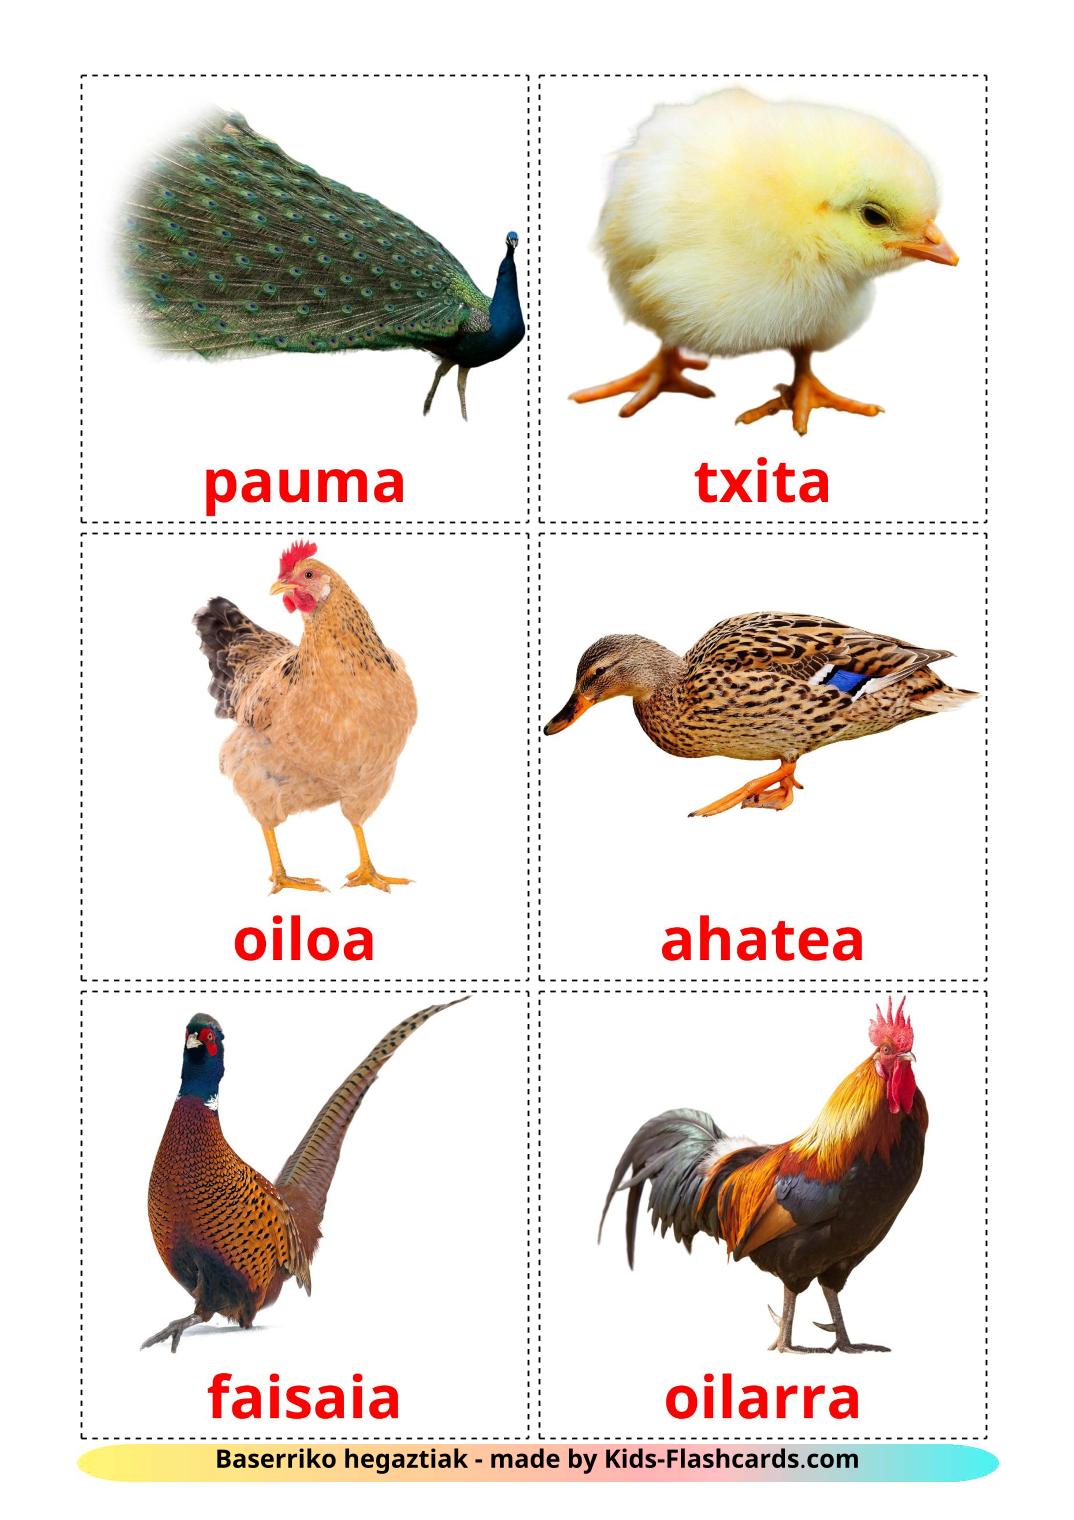 Aves da Quinta - 11 Flashcards bascoes gratuitos para impressão